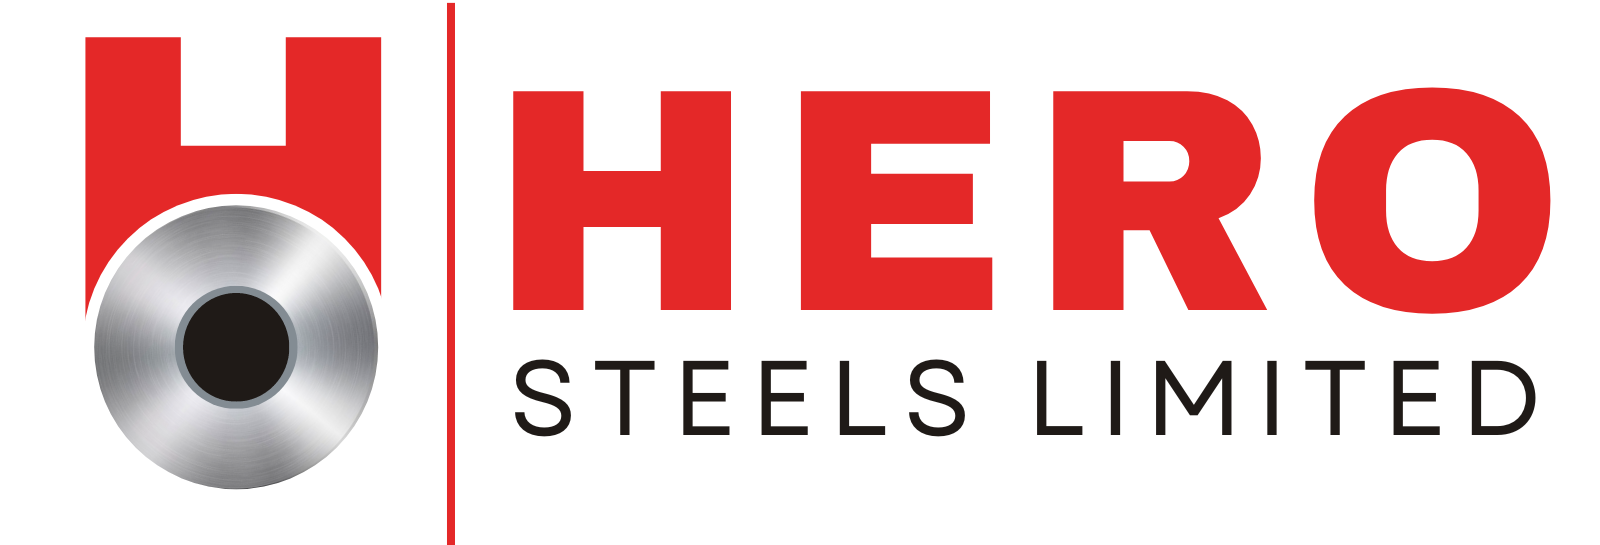 Hero Steels Logo